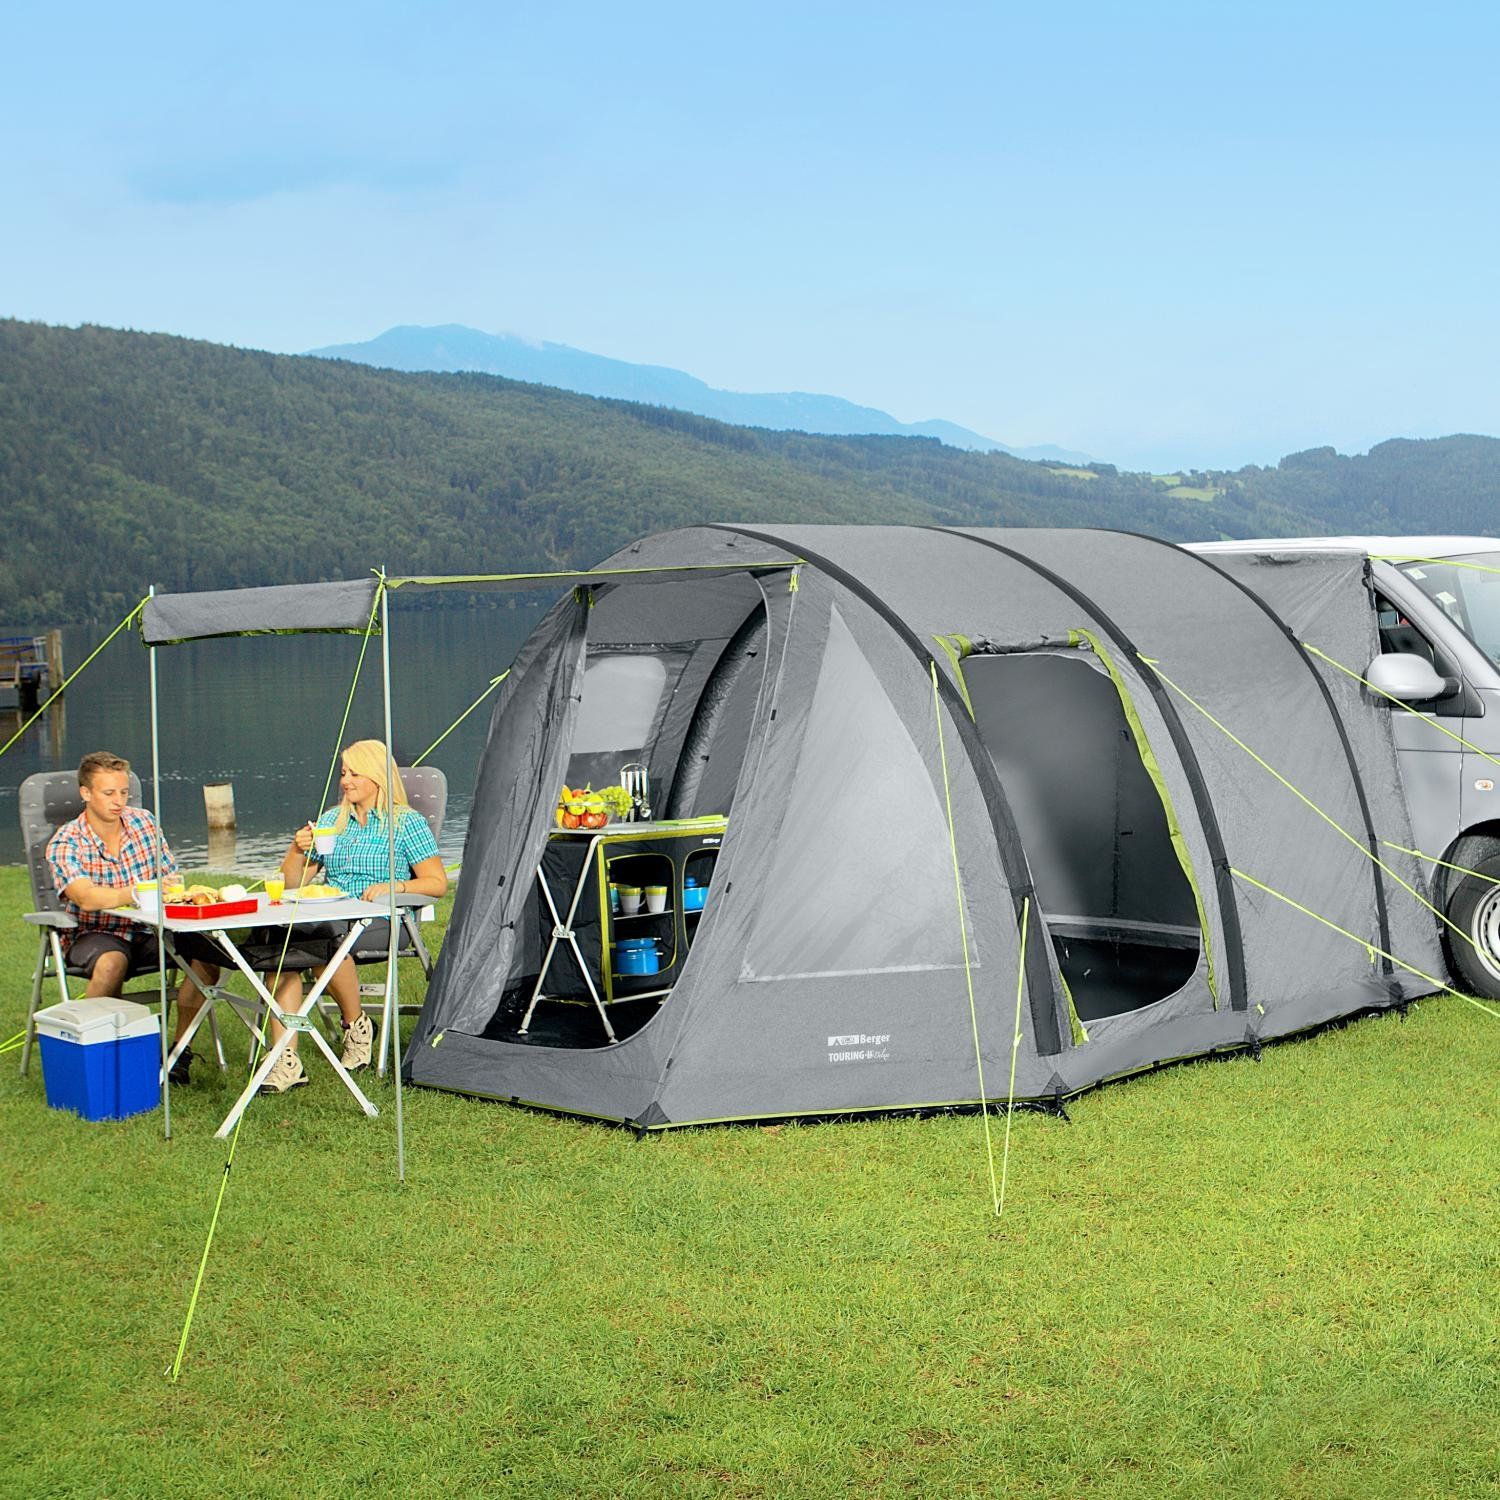 Обзор кемпинга. Палатки Fritz-Berger. Палатка кемпинг Touring 2 Еasy click. Шатер кемпинг GK 003 S. Палатка Basecamp Tent.